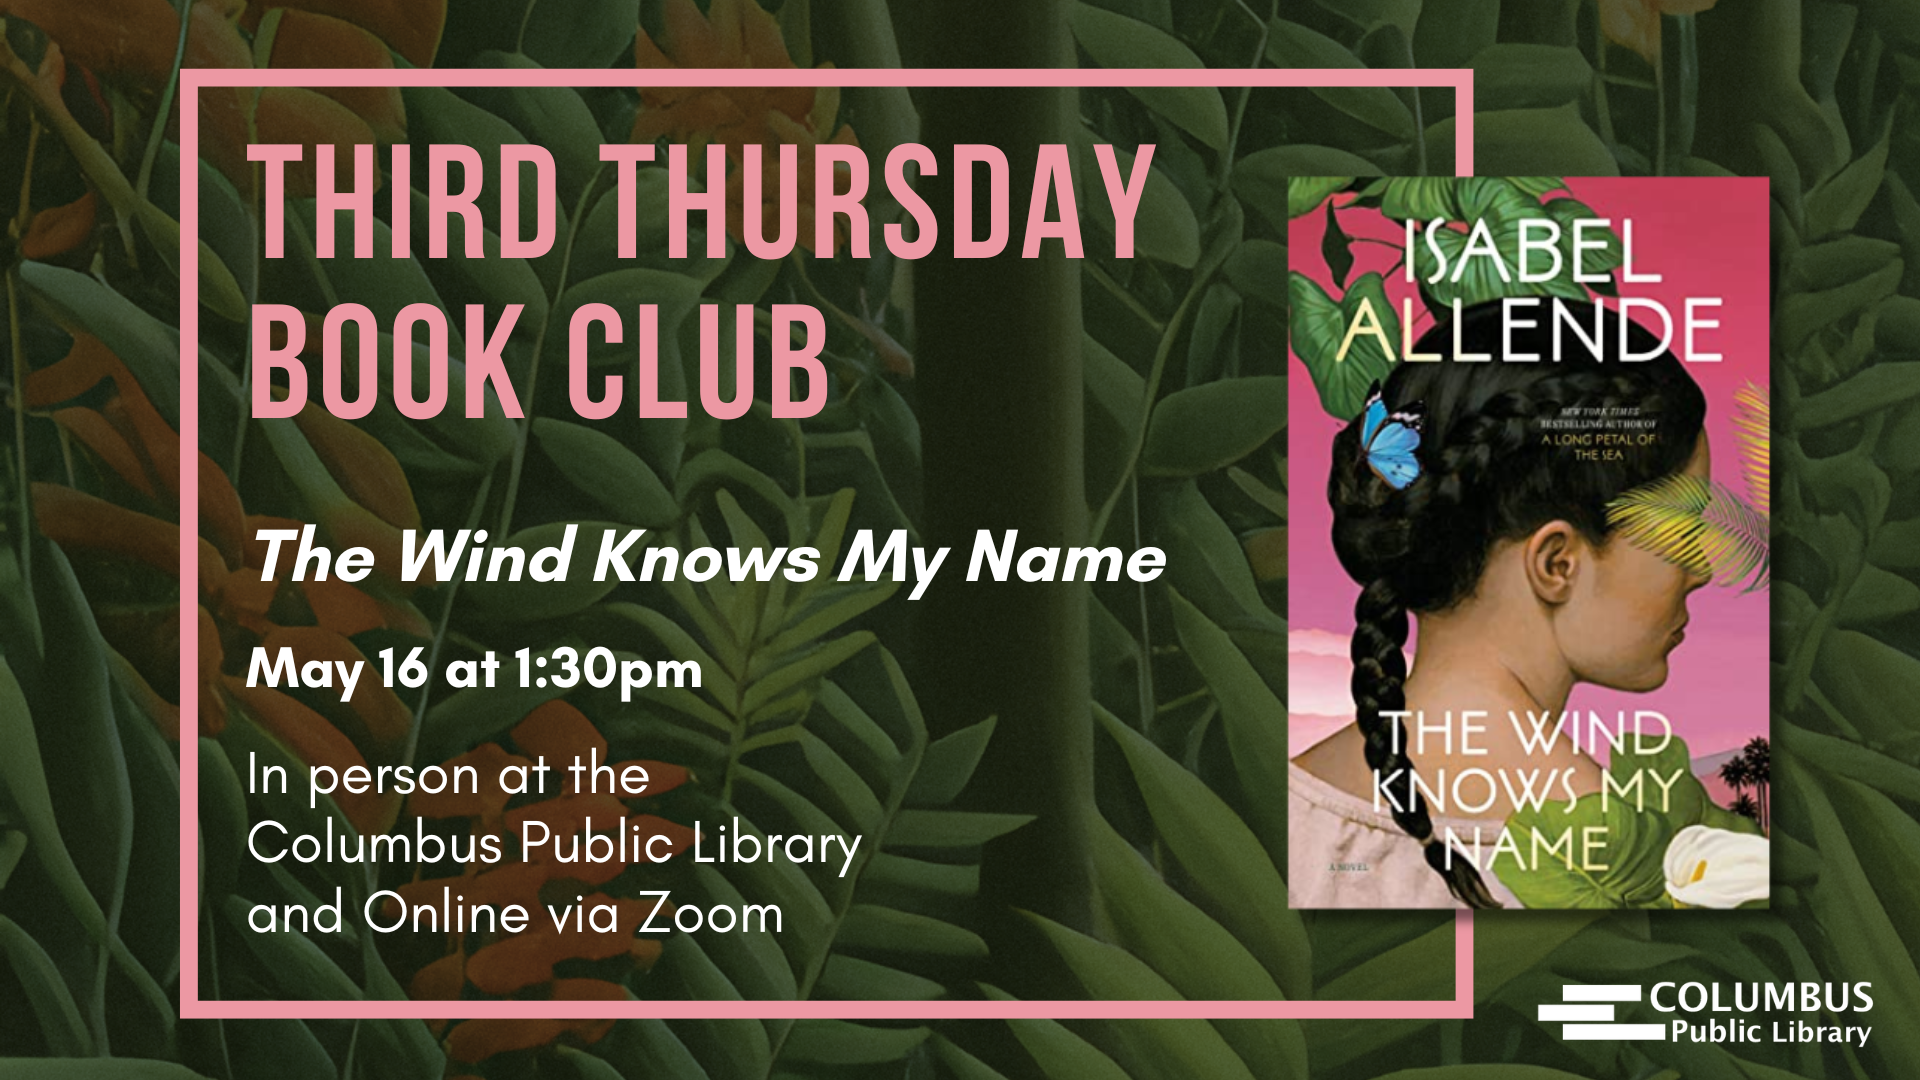 Third Thursday Book Club